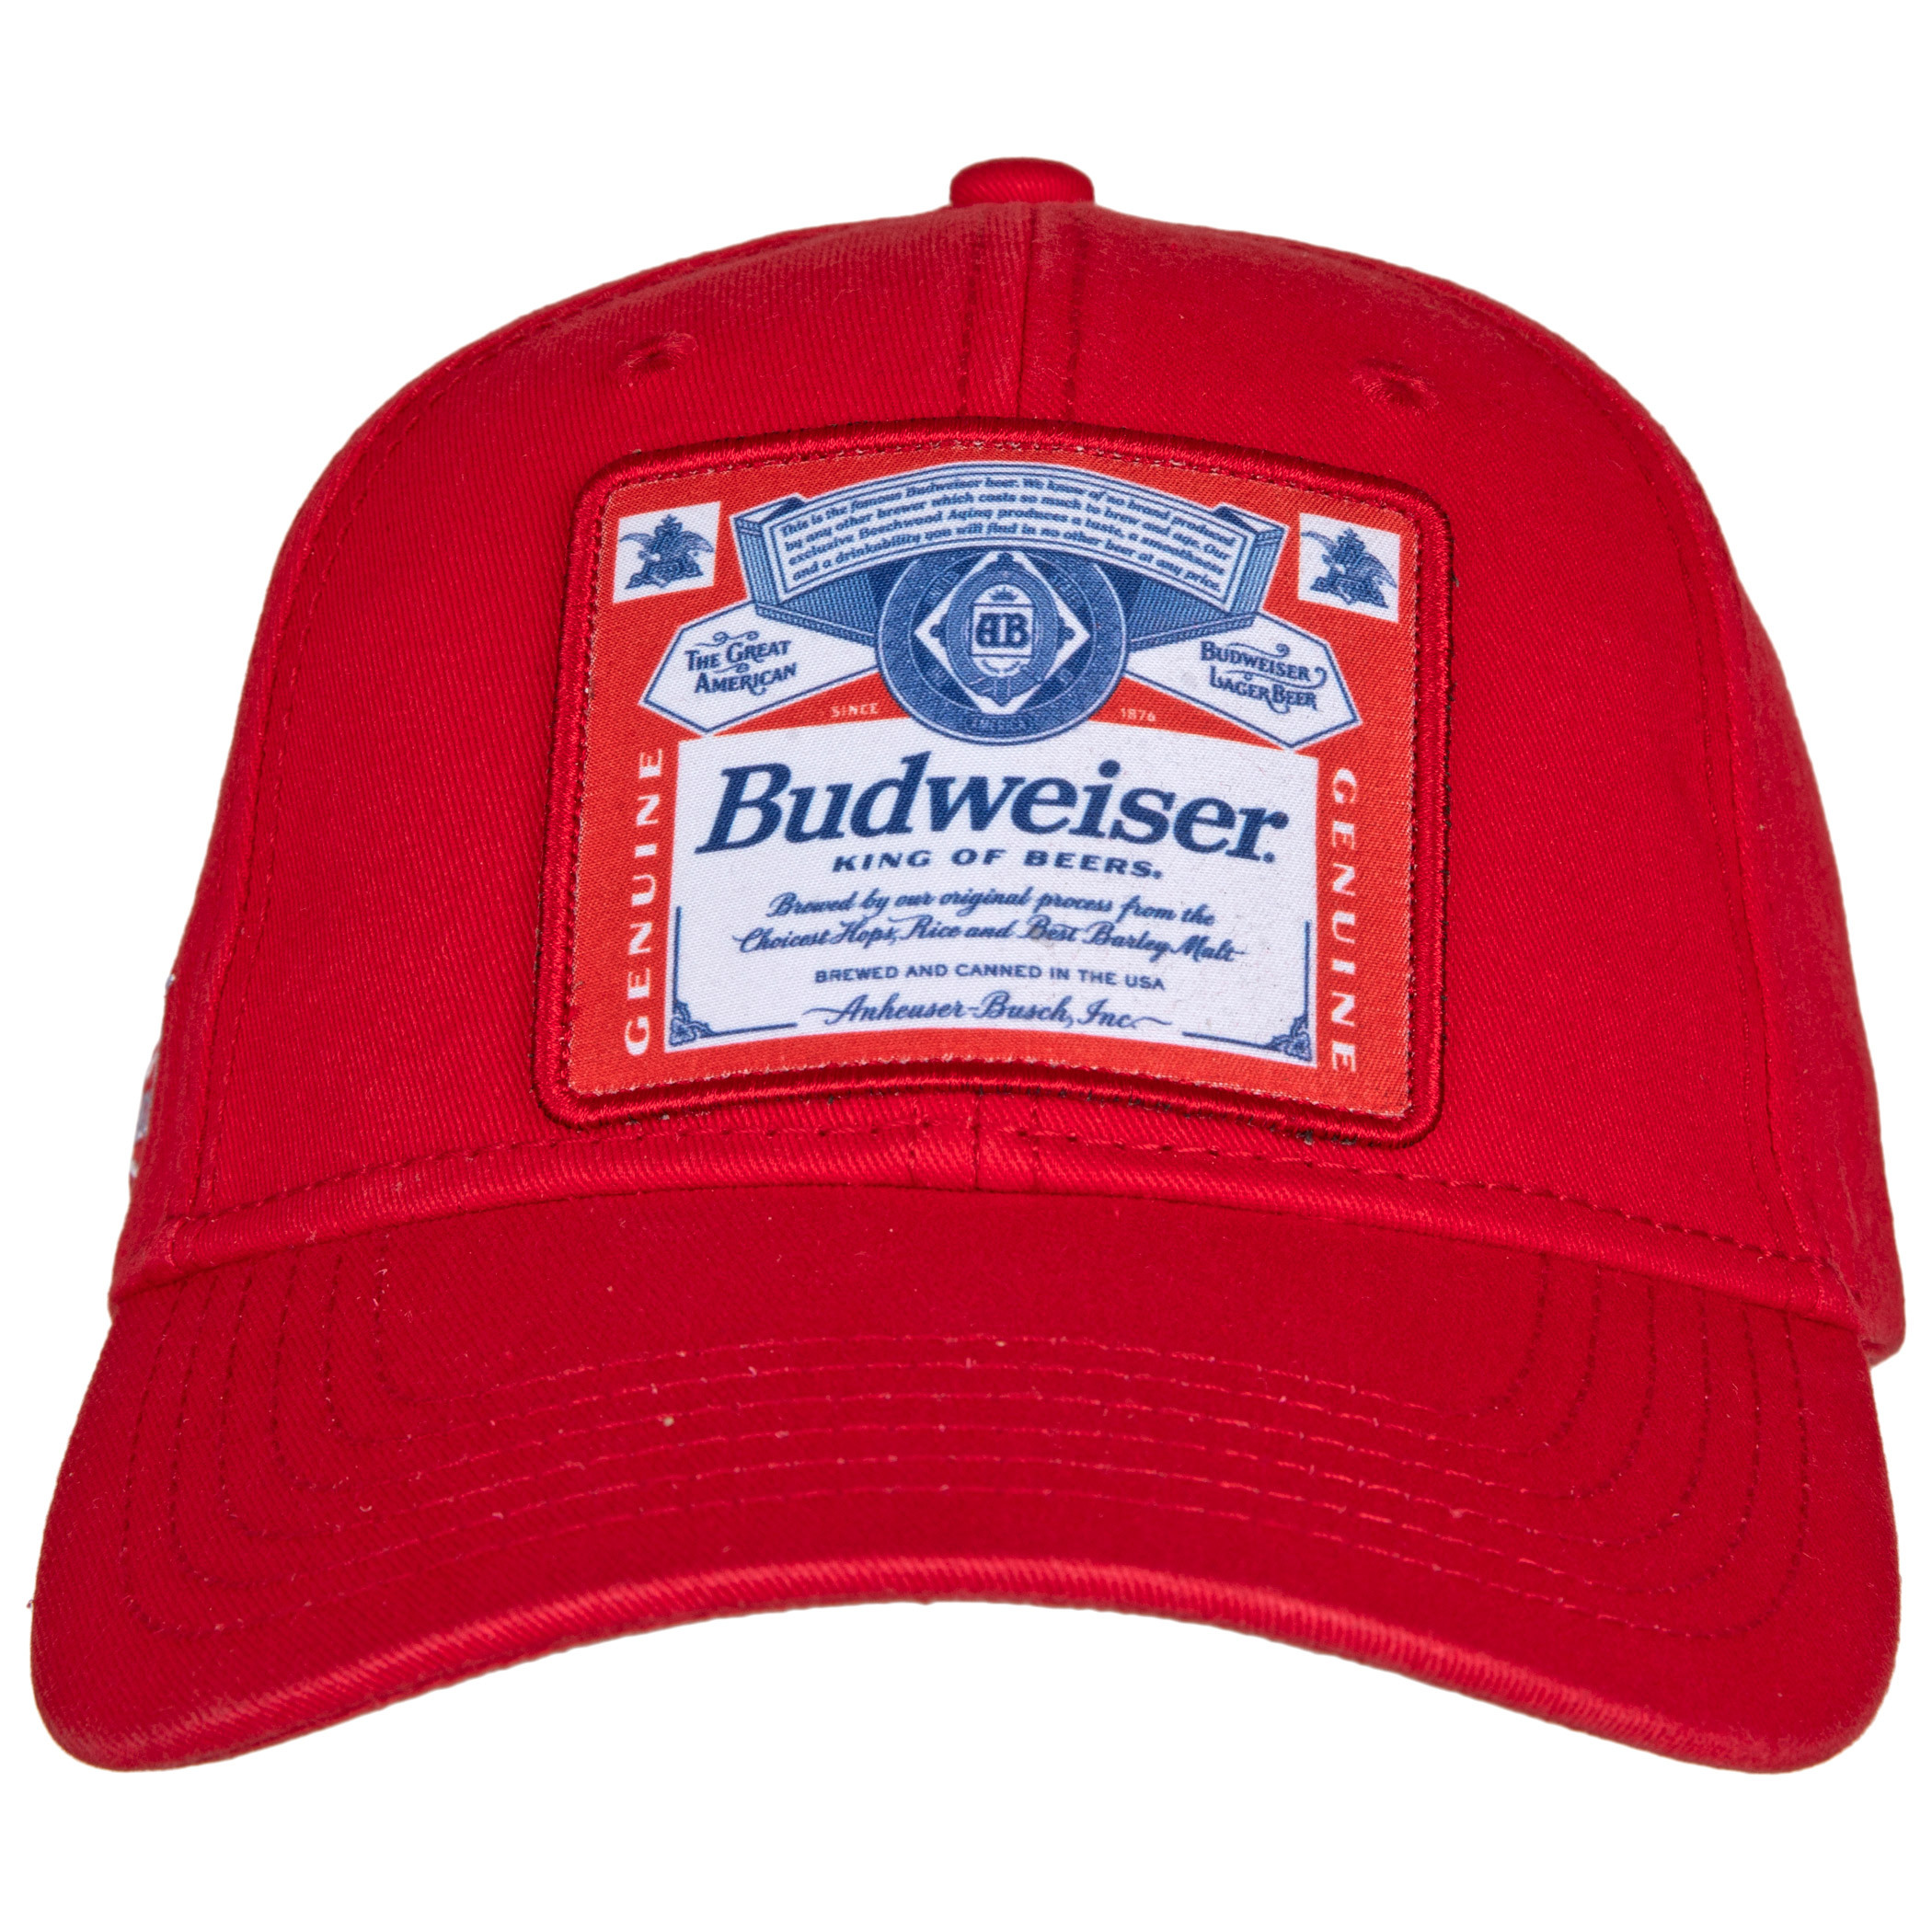 Budweiser King of Beers Snapback Cap.